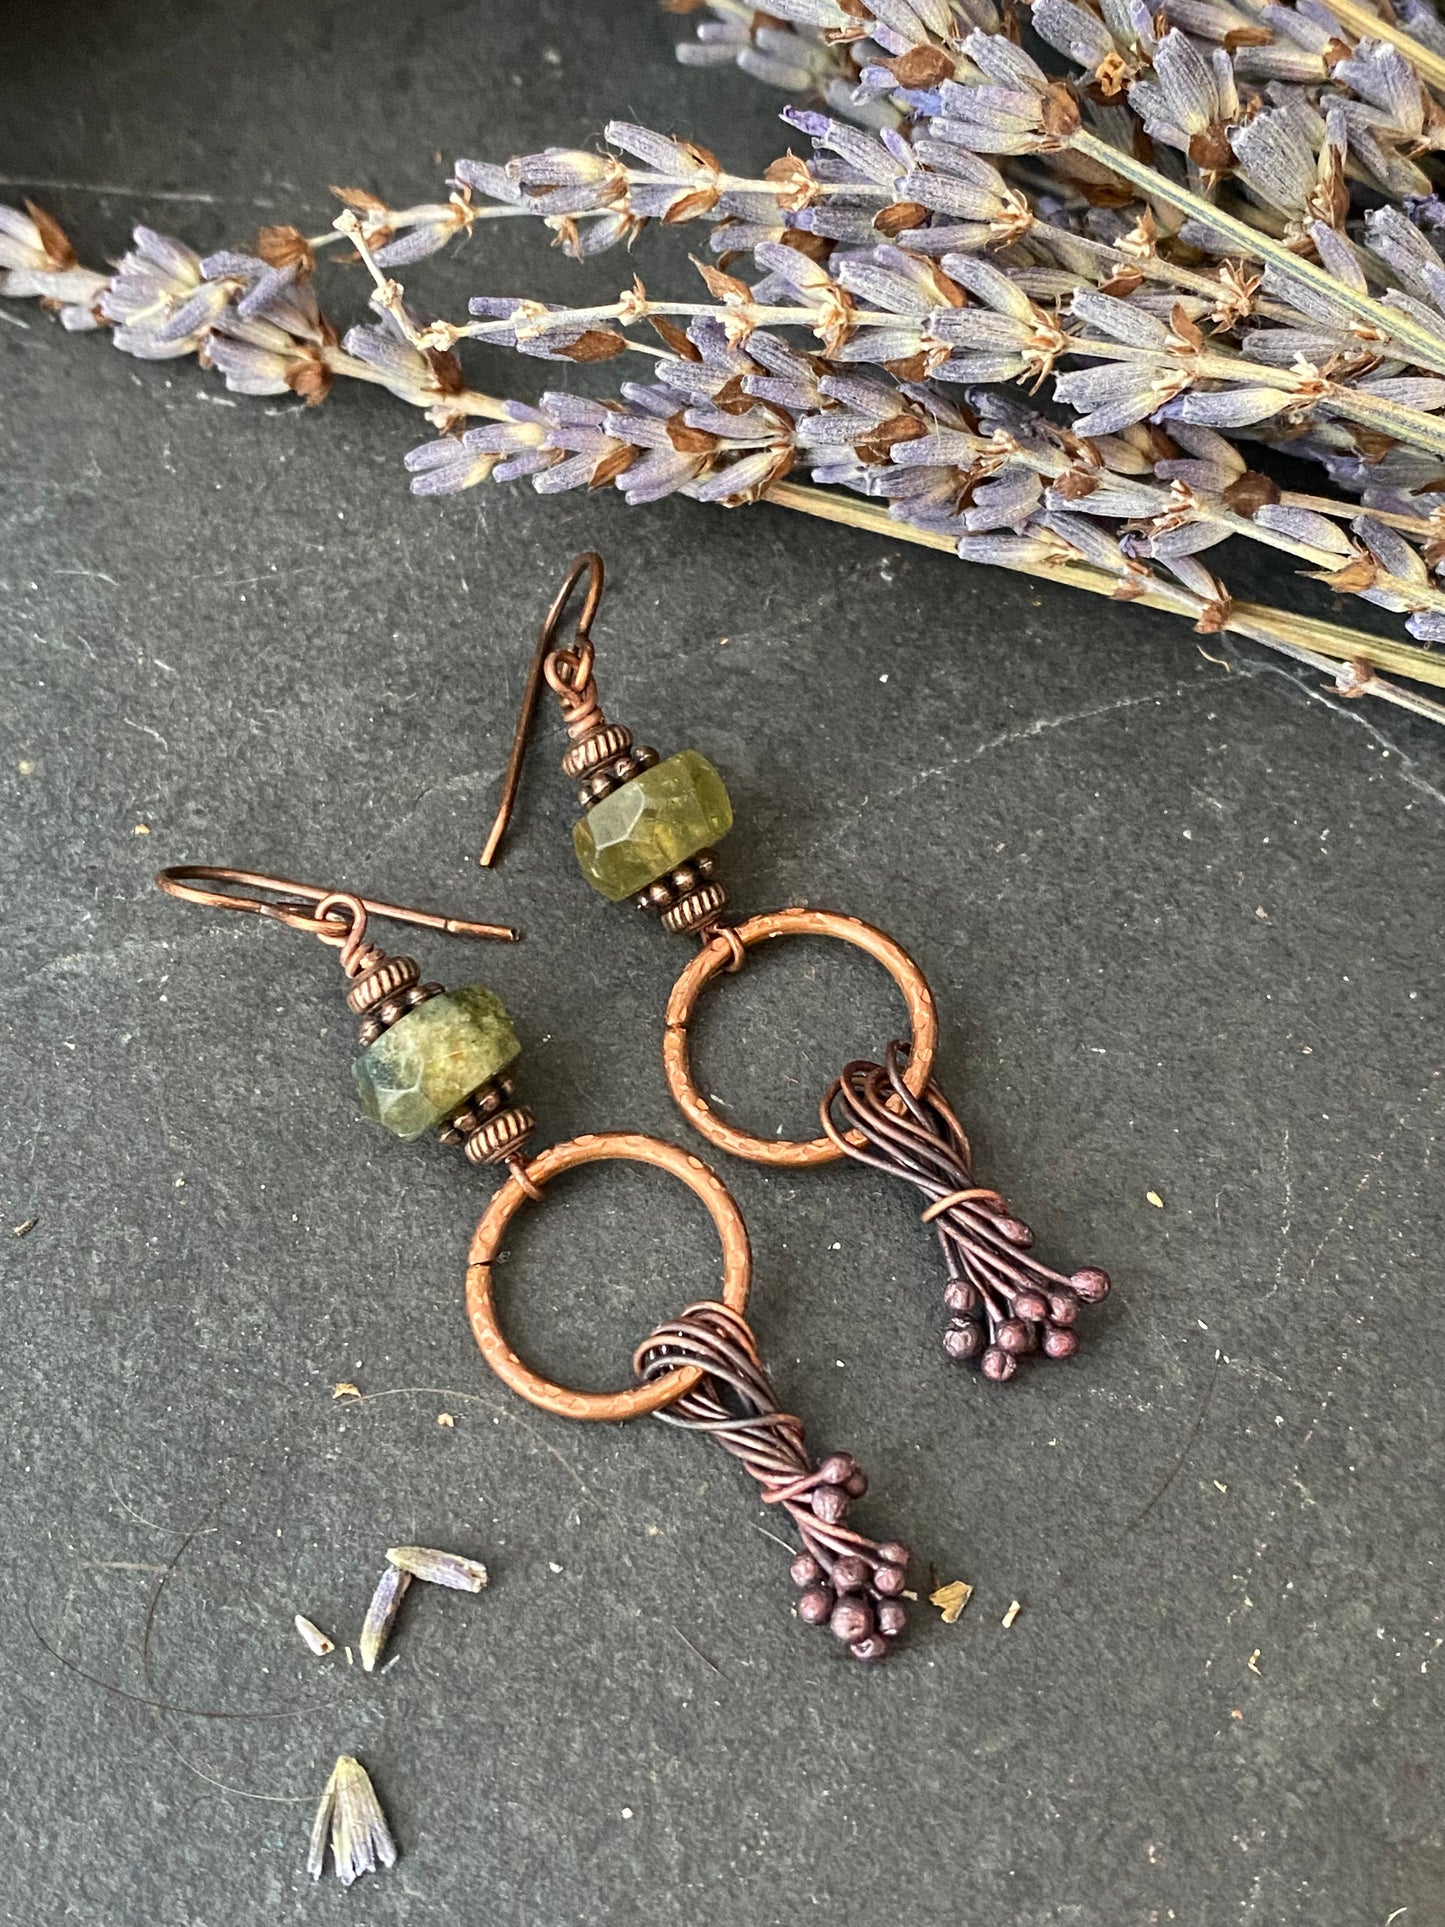 Green garnet gemstone, hammered hoops, copper metal earrings